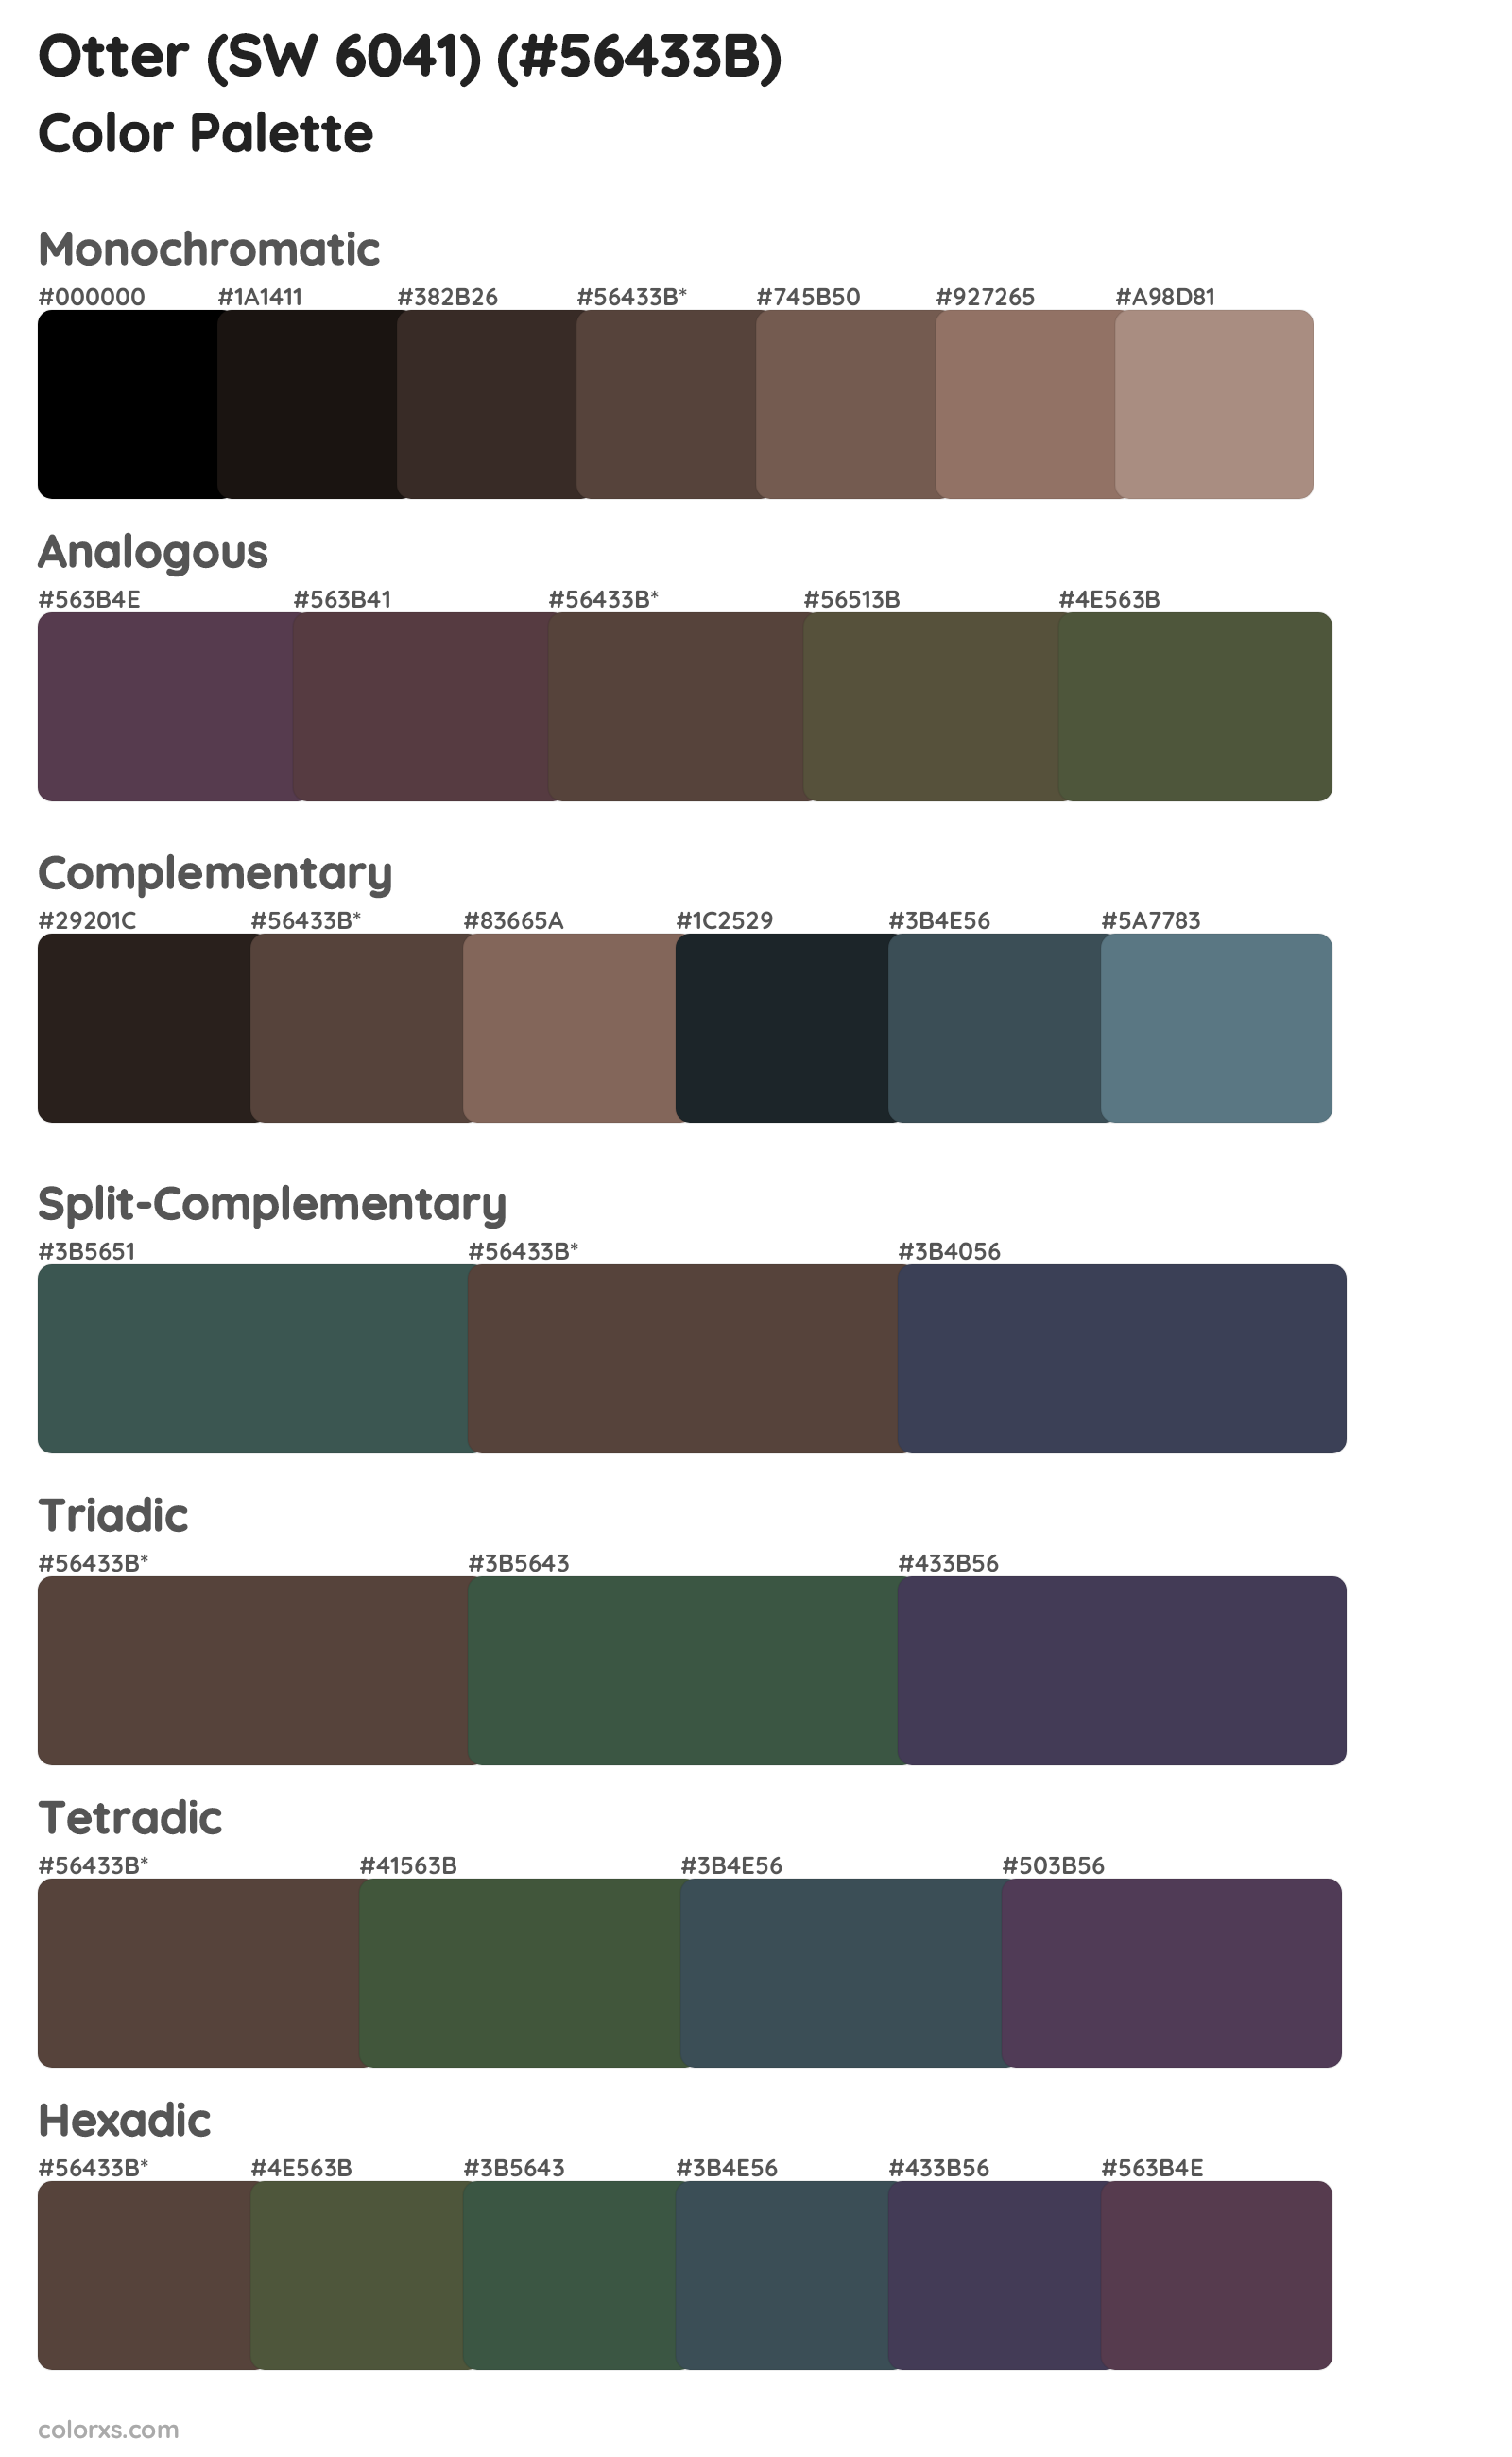 Otter (SW 6041) Color Scheme Palettes